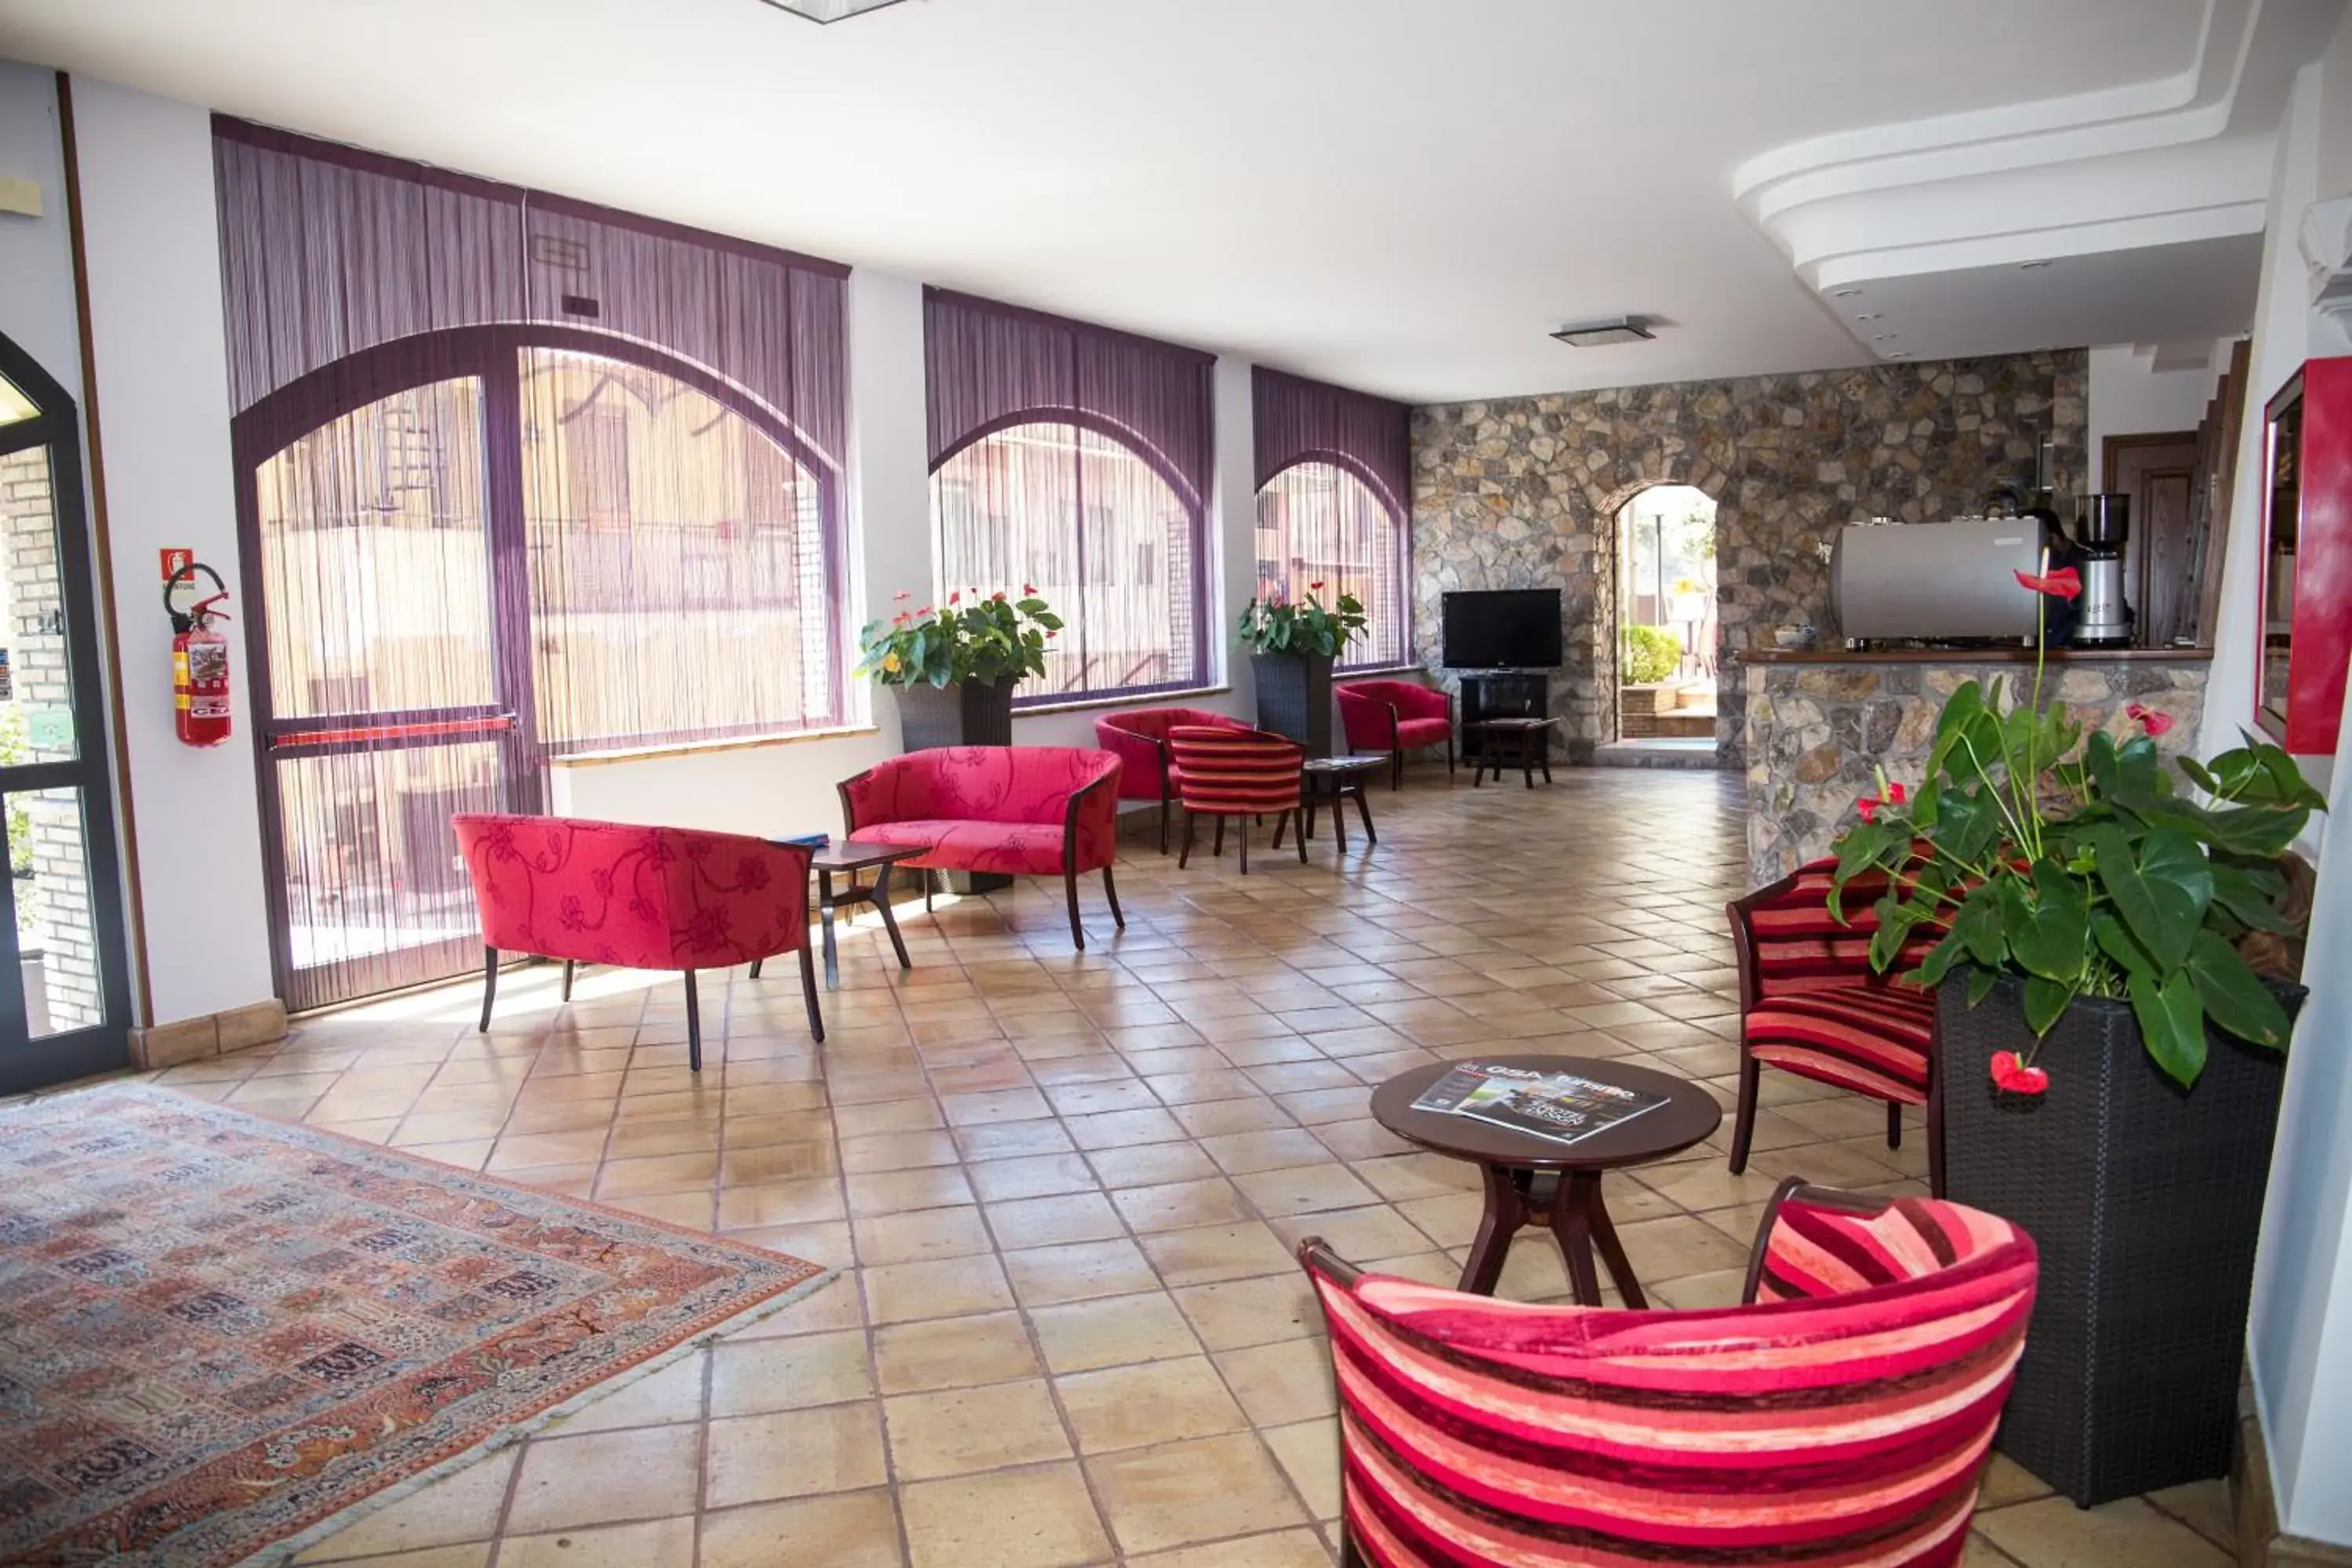 Lobby or reception in Hotel Corallo